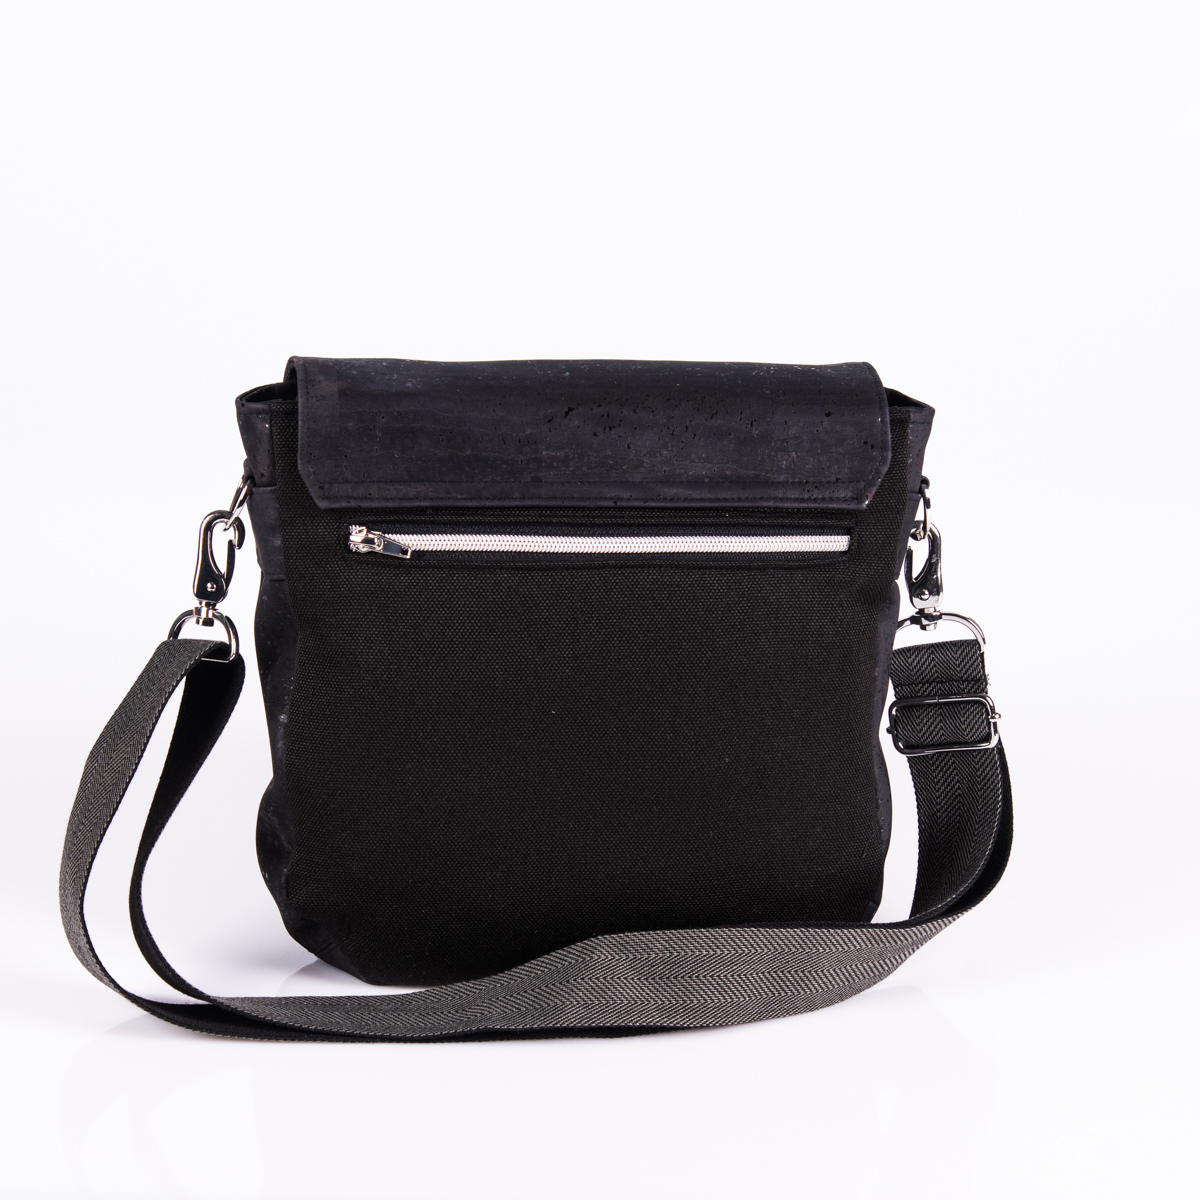 Handtasche Mila in Schwarz von Q.Linda Manufaktur Rückansicht